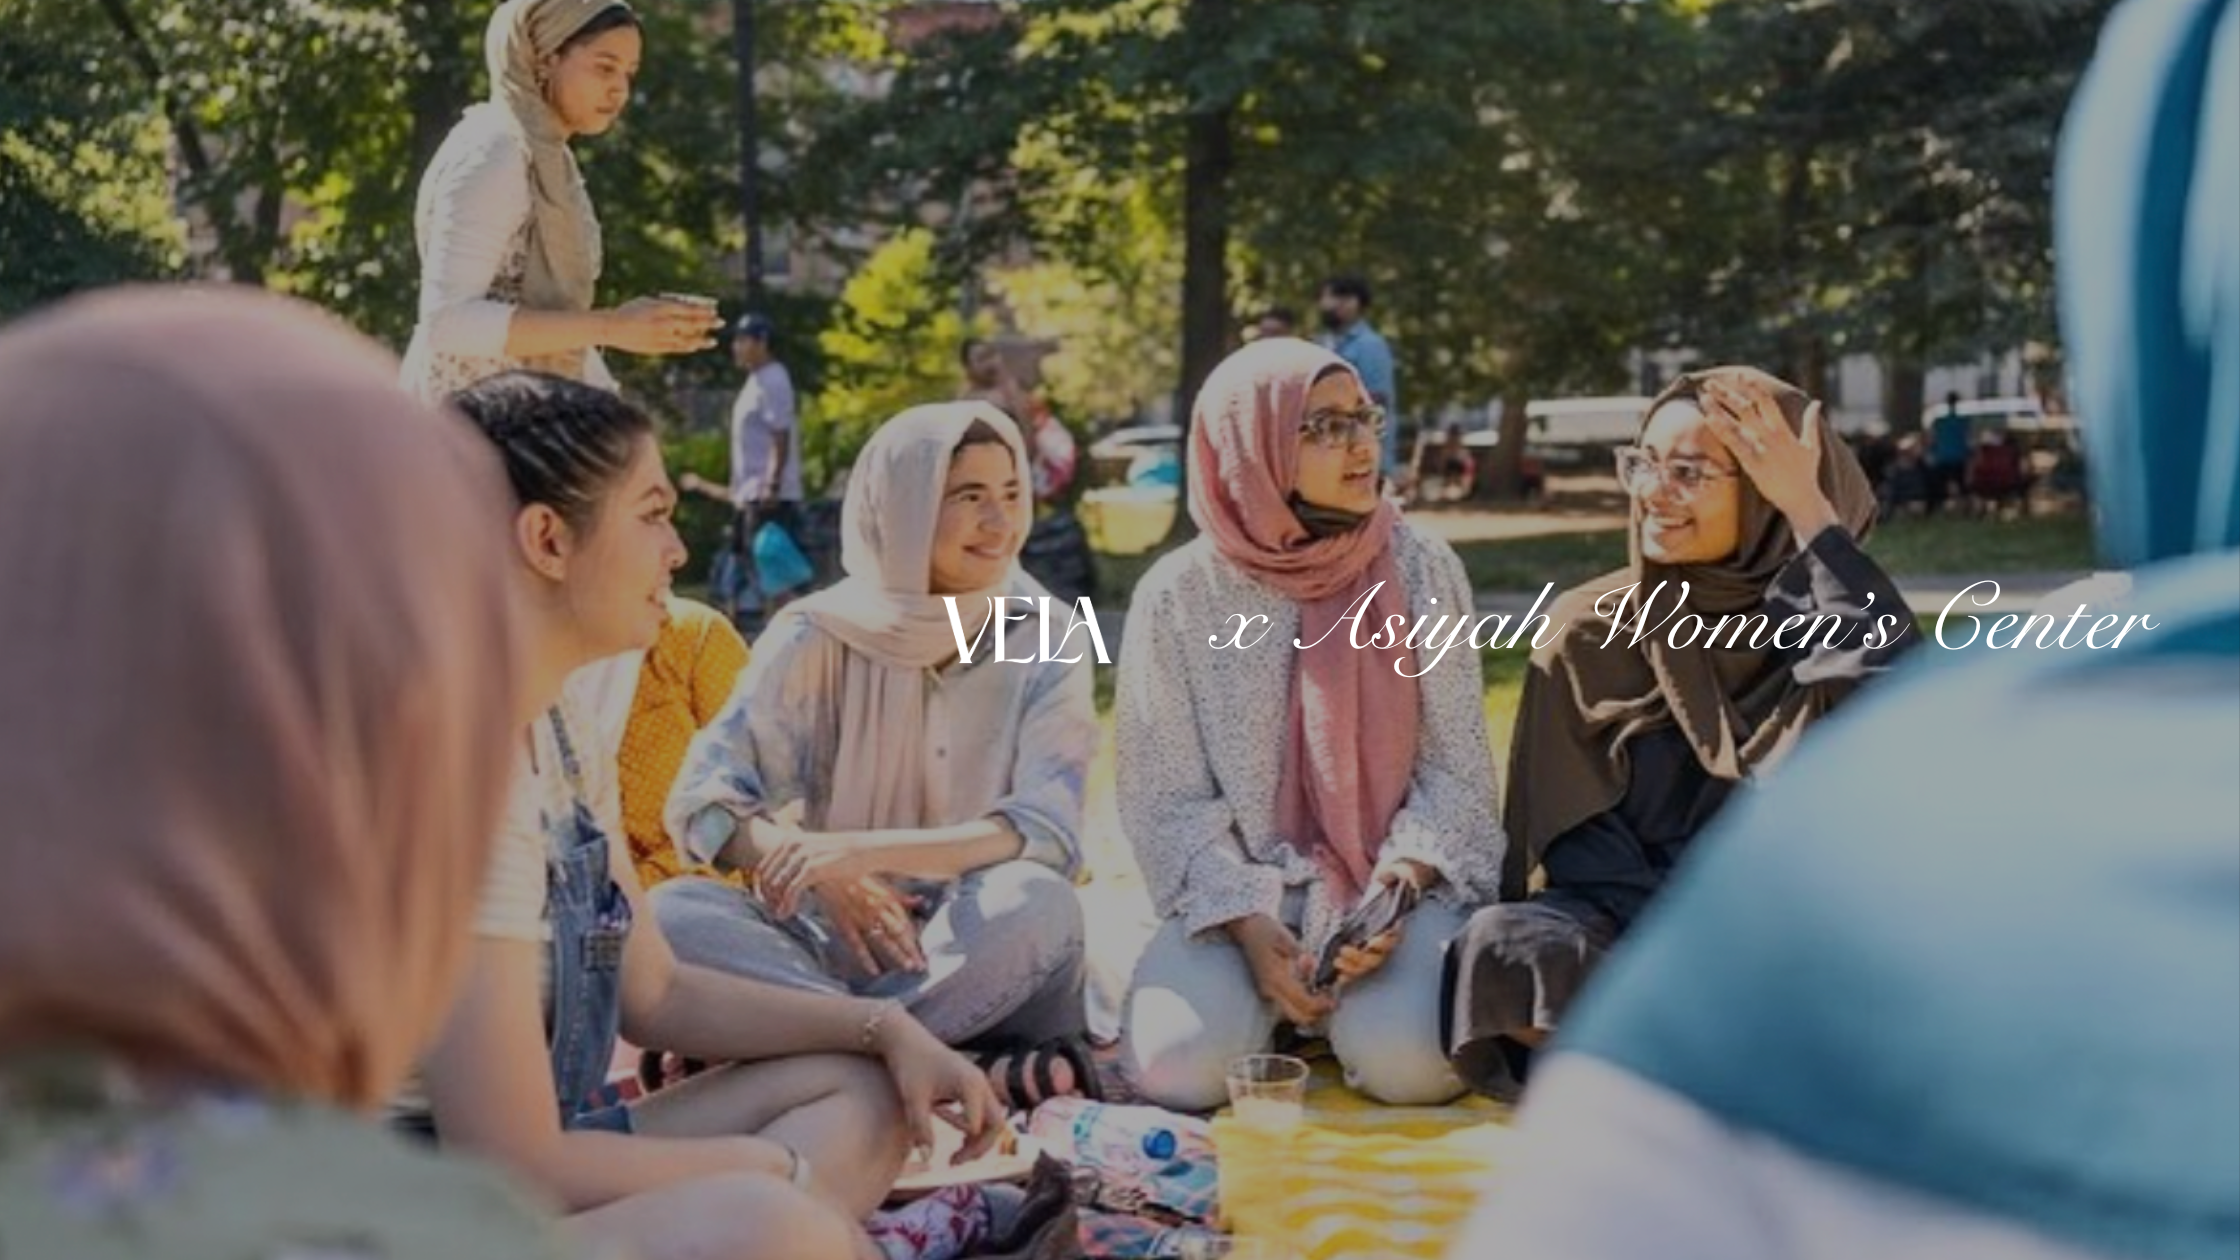 Join VELA and Asiyah Women’s Center for a purposeful Ramadan